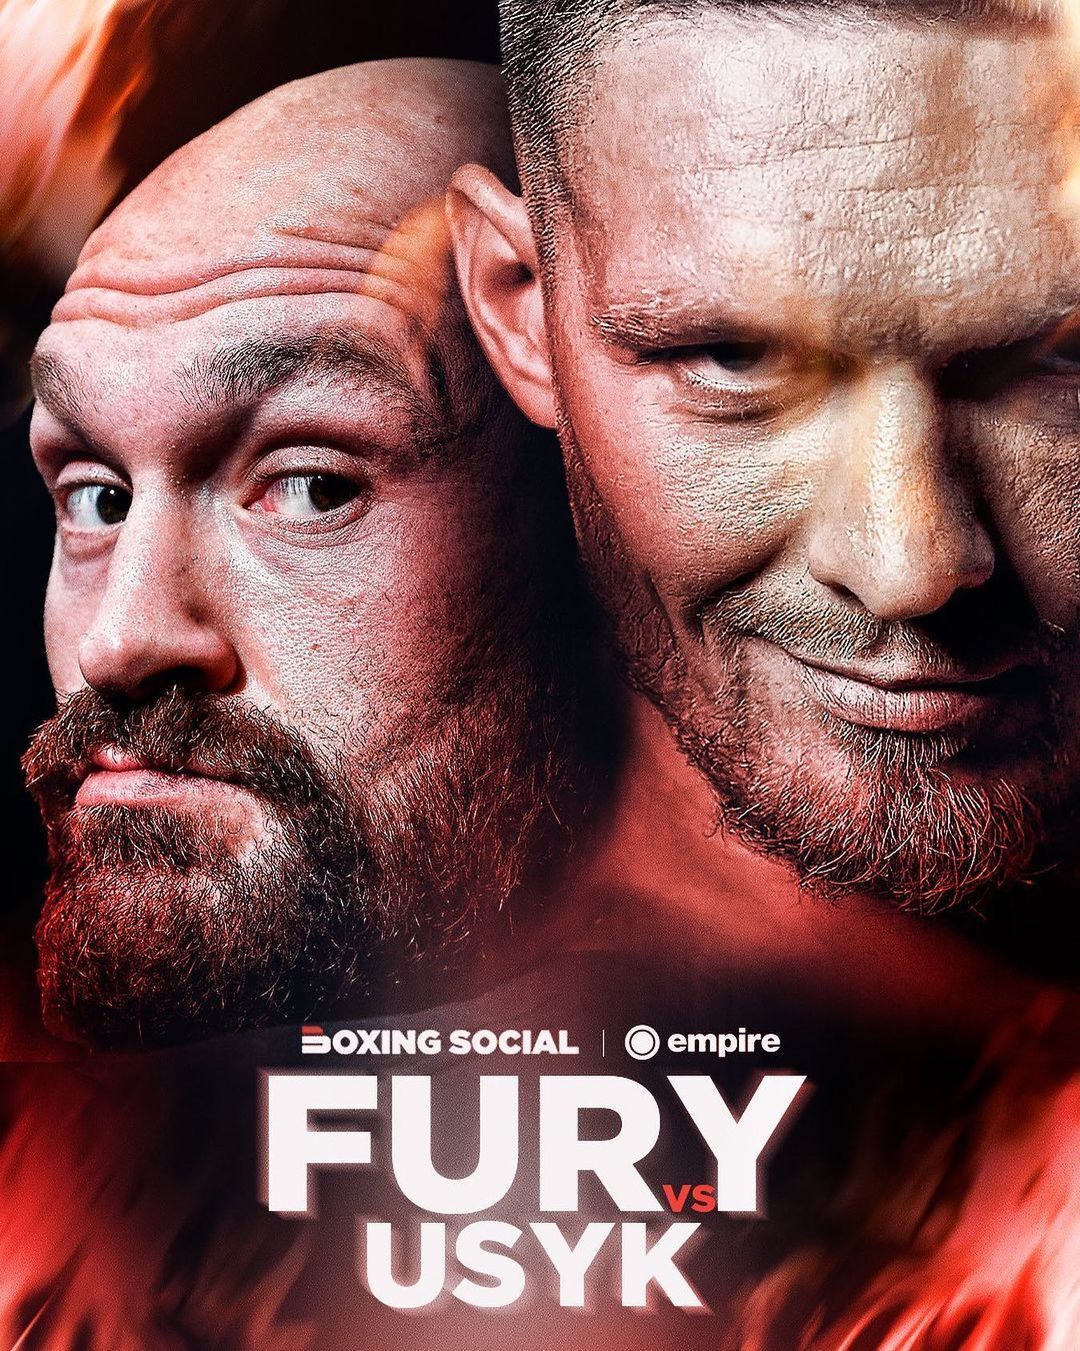 Tyson Fury wydał oświadczenie o zakończeniu kariery, zapowiadając pięć walk jednocześnie. Wideo